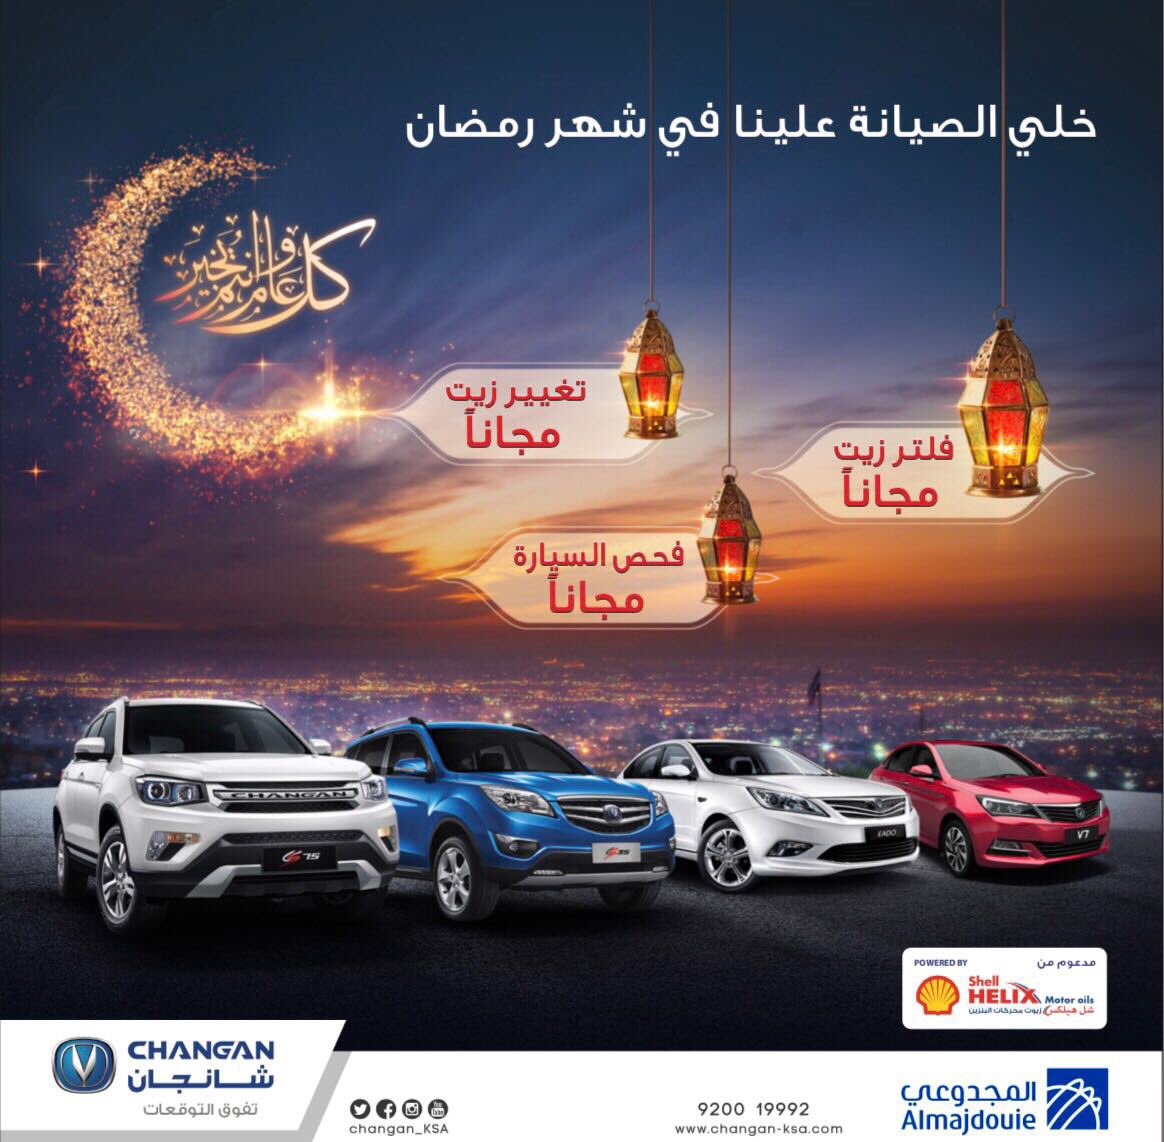 جميع عروض السيارات في شهر رمضان المبارك 2017 هذا العام 1438هـ 37